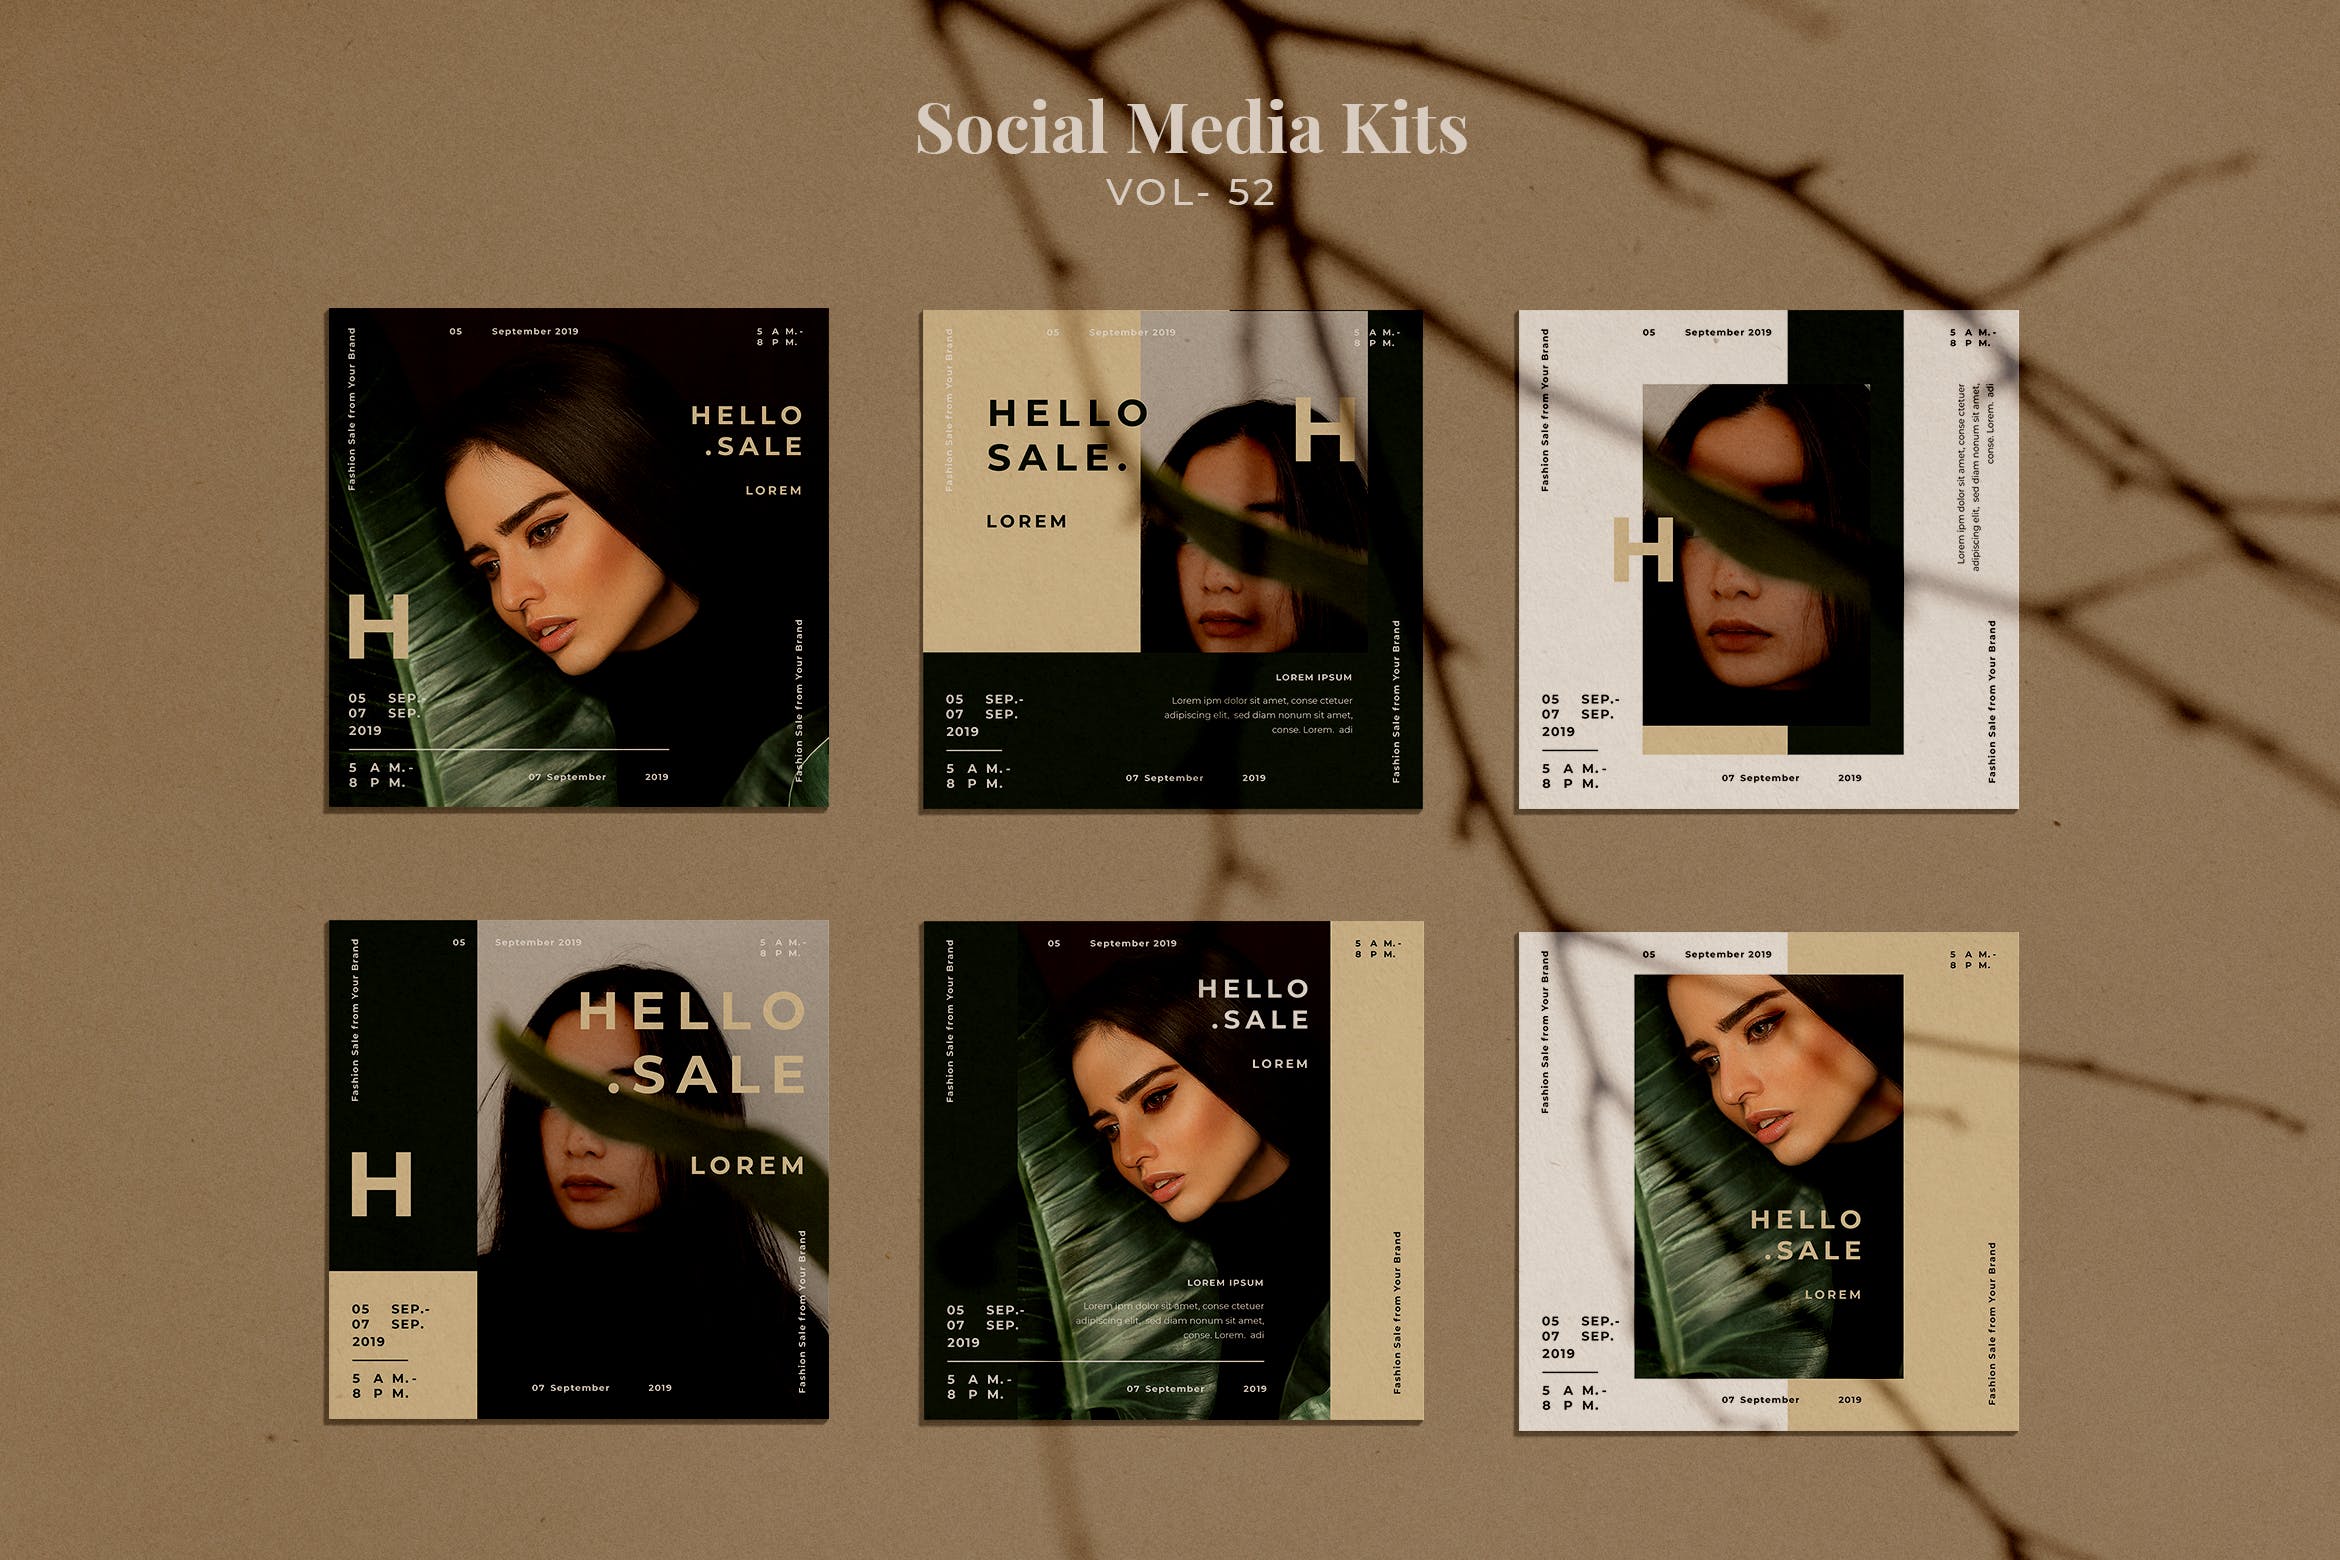 女装高端品牌促销活动社交推广设计素材包v52 AFR Social Media Kit.52插图